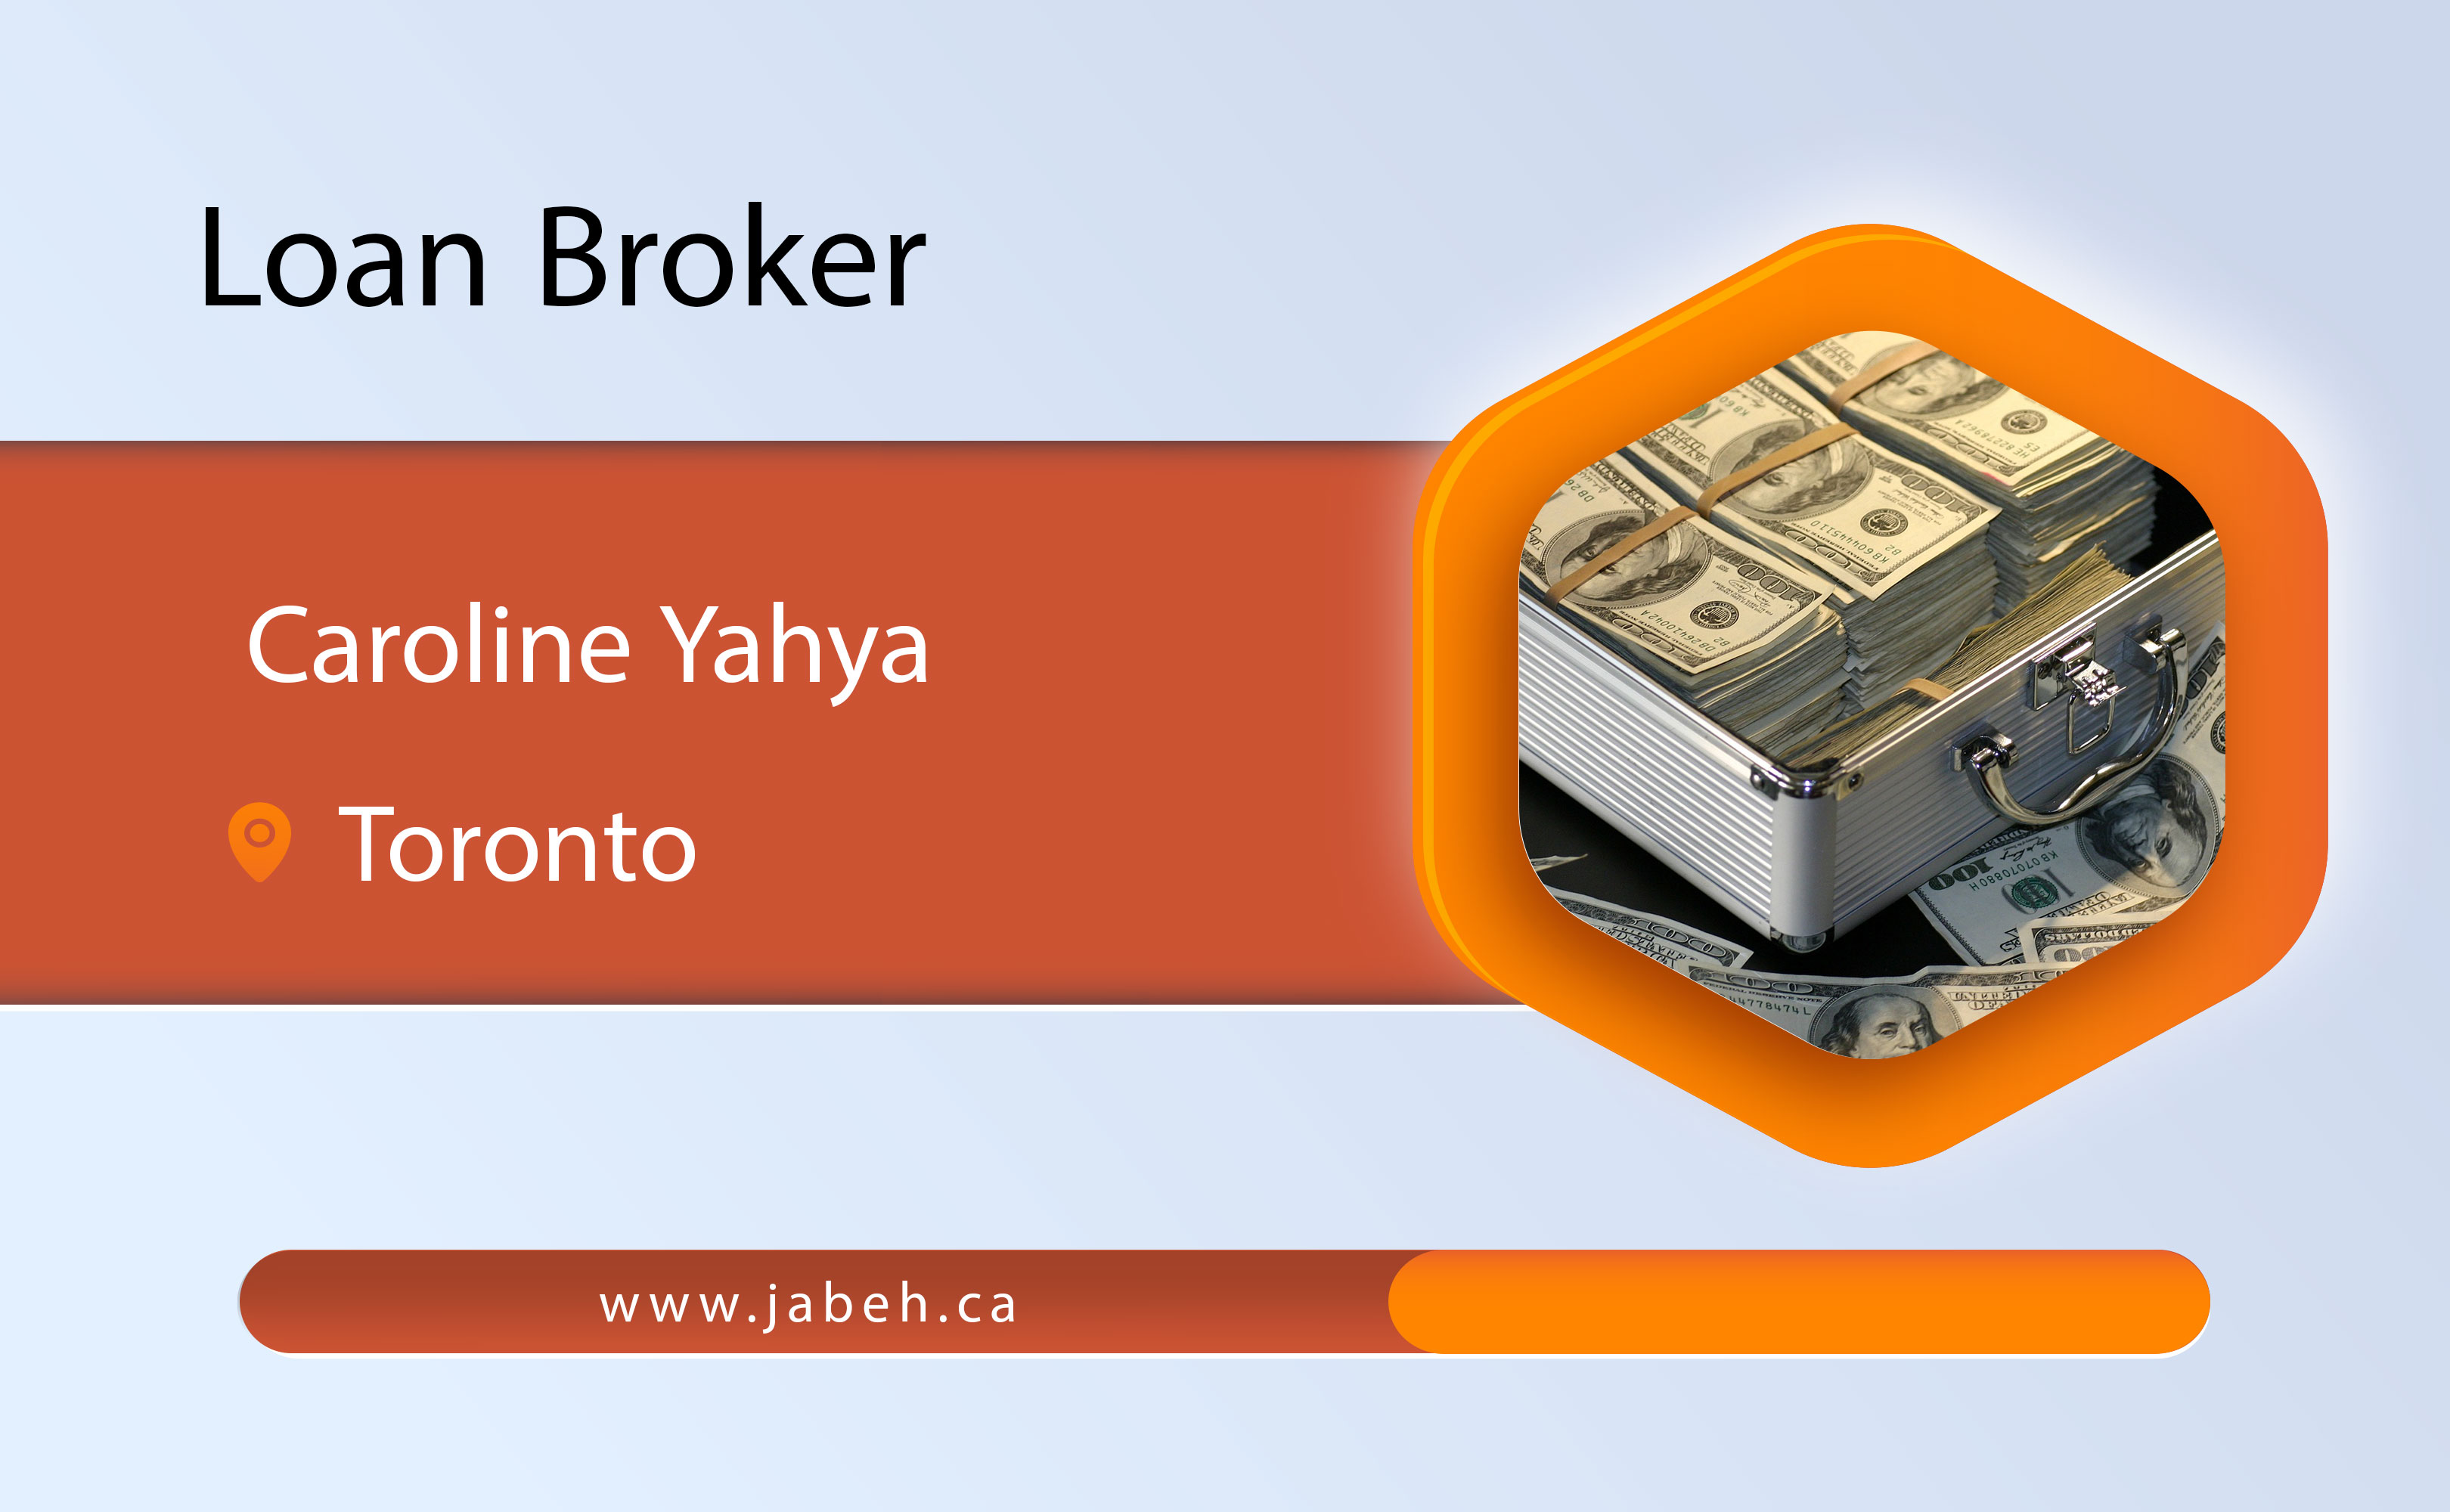 Iranian loan broker Caroline Yahya in Toronto